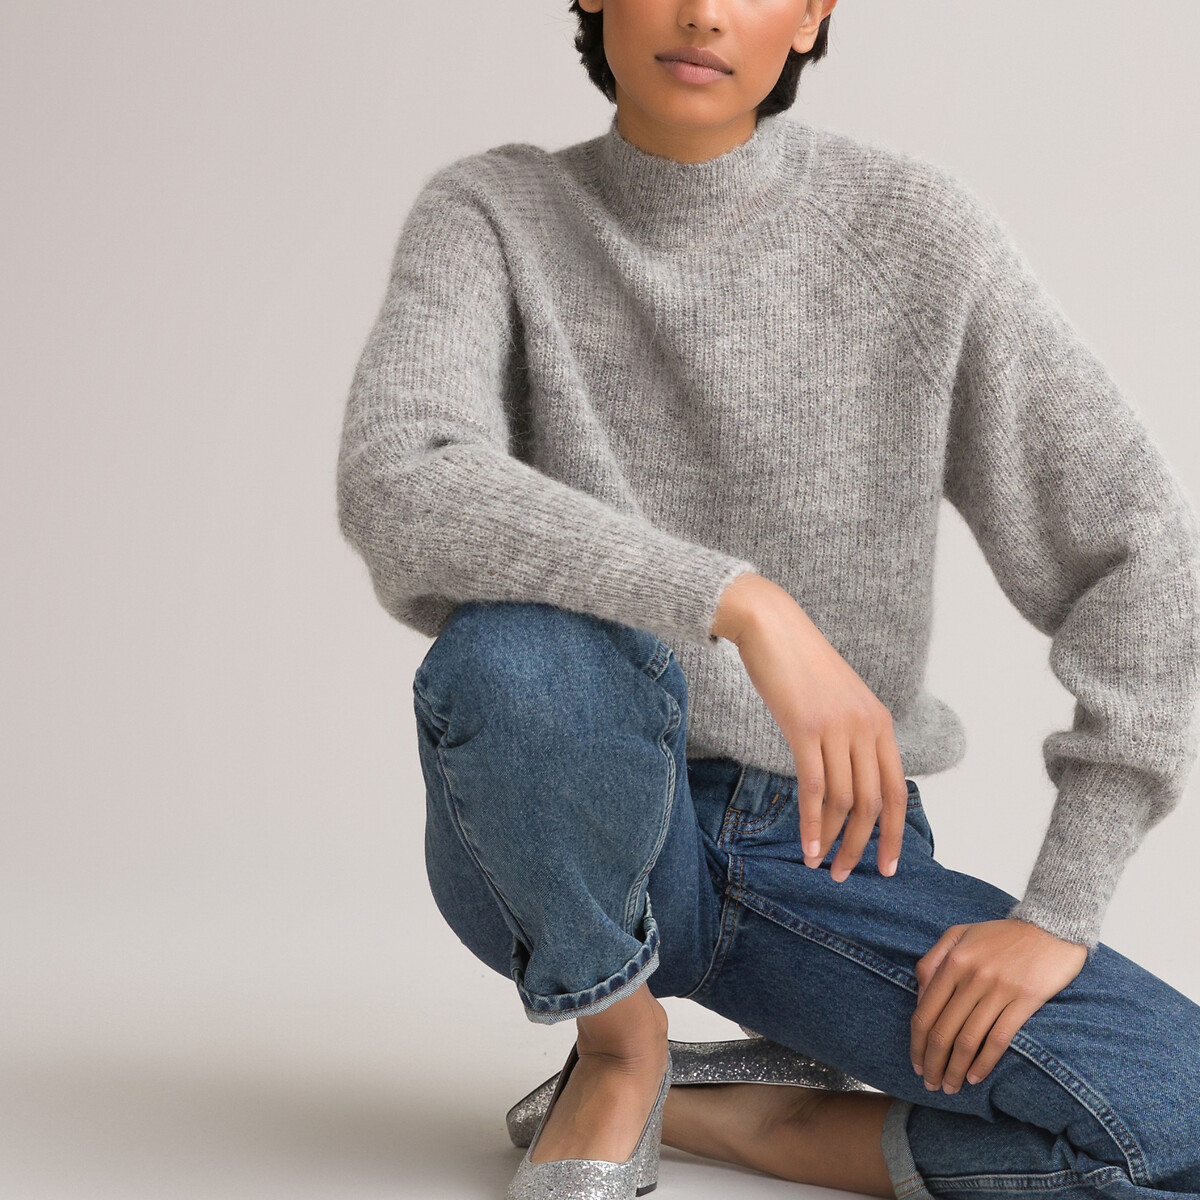 Kleding Dameskleding Sweaters Pullovers Trui met hoge hals in wol en kasjmier 